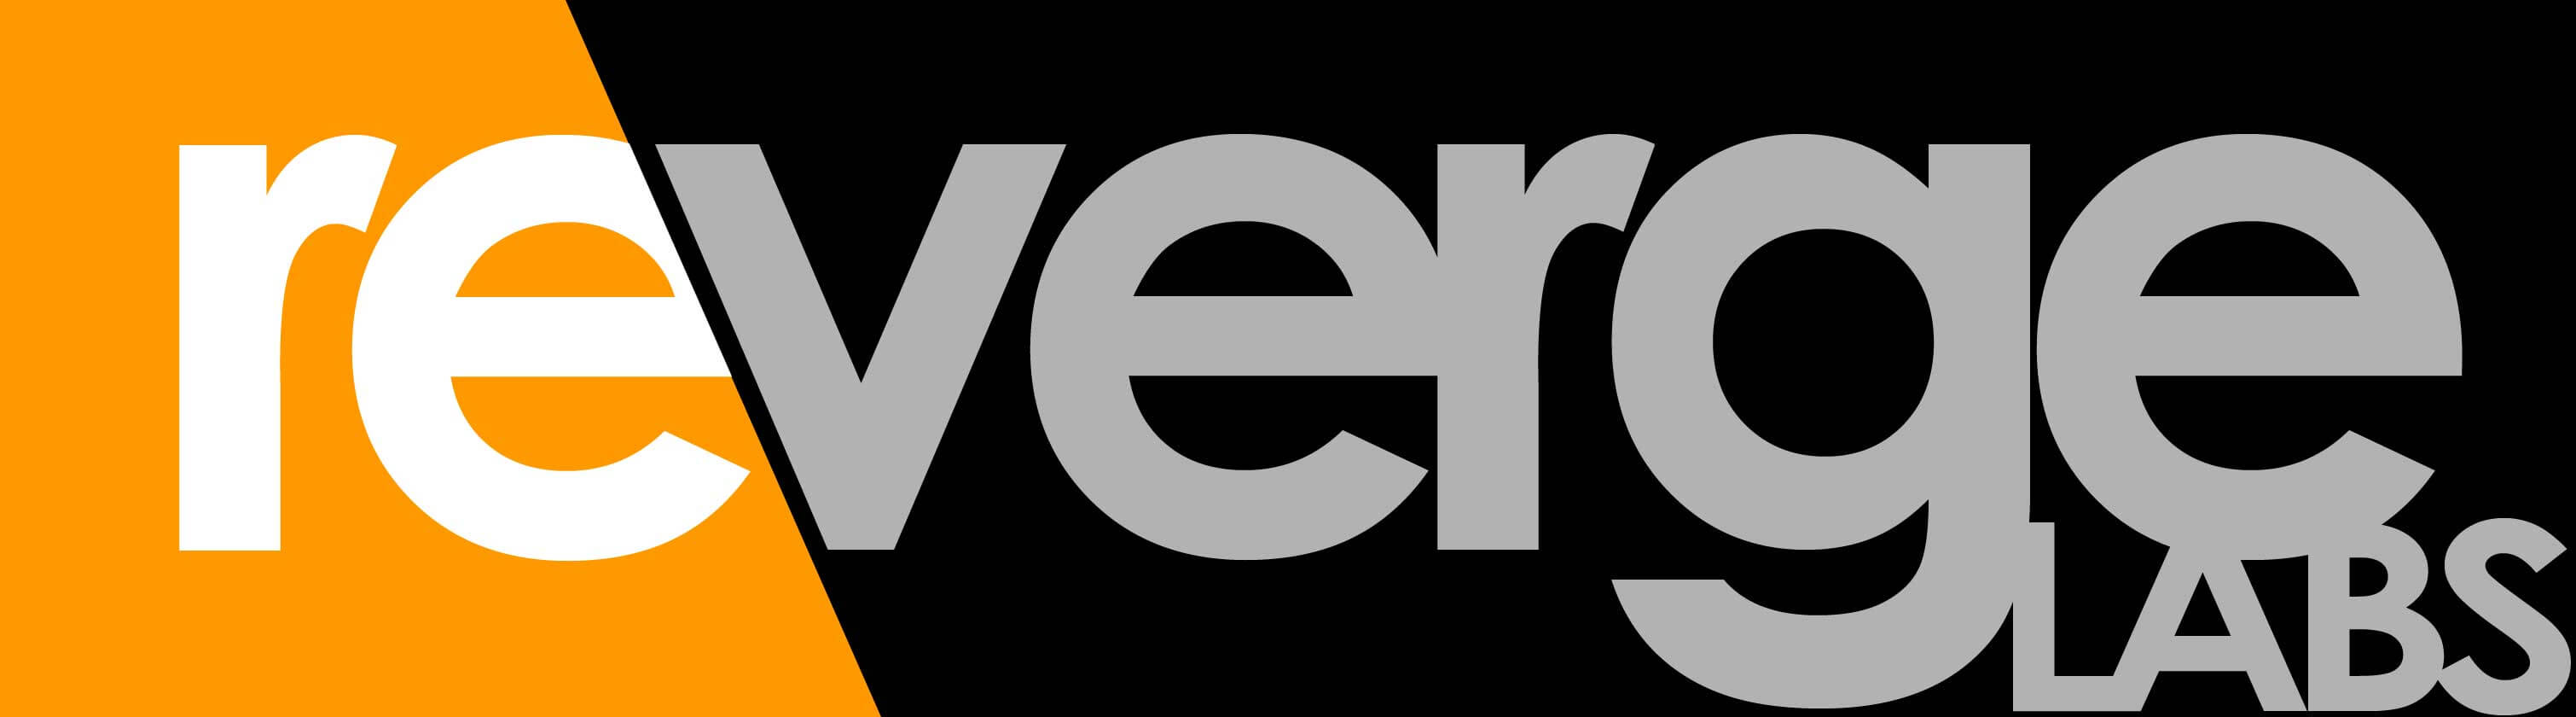 Reverge Labs logo